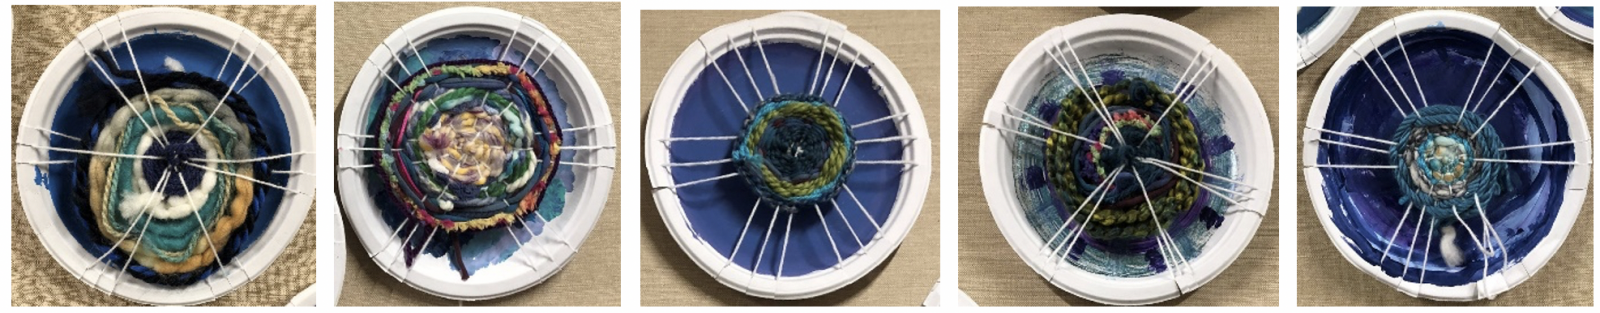 yarn weaving on painted plate